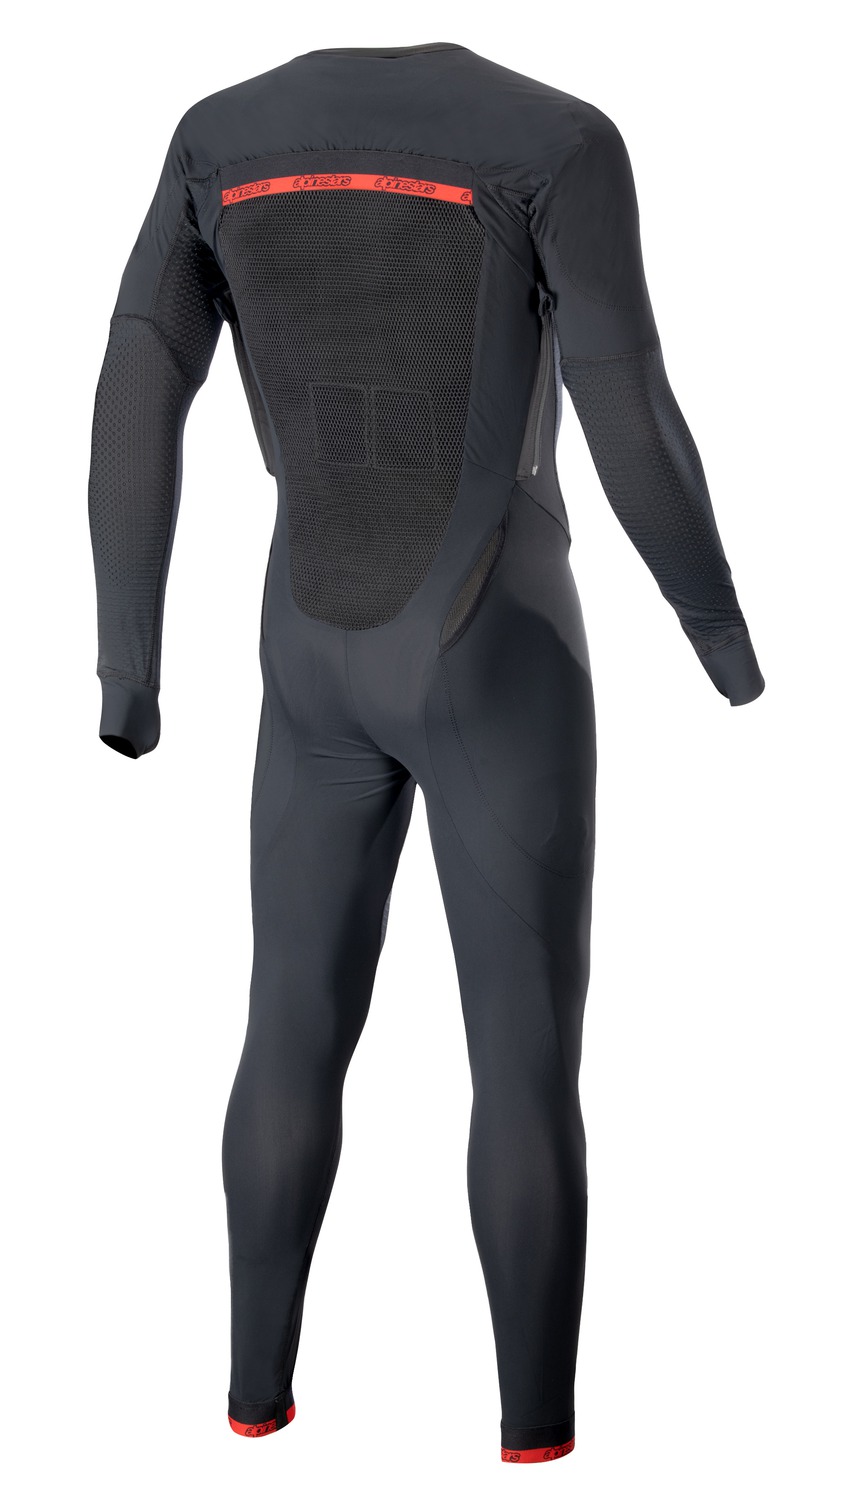 Obrázek produktu vnější vrstva airbagové vesty TECH-AIR®10, ALPINESTARS (černá/červená/šedá, provedení s dlouhými nohavicemi)